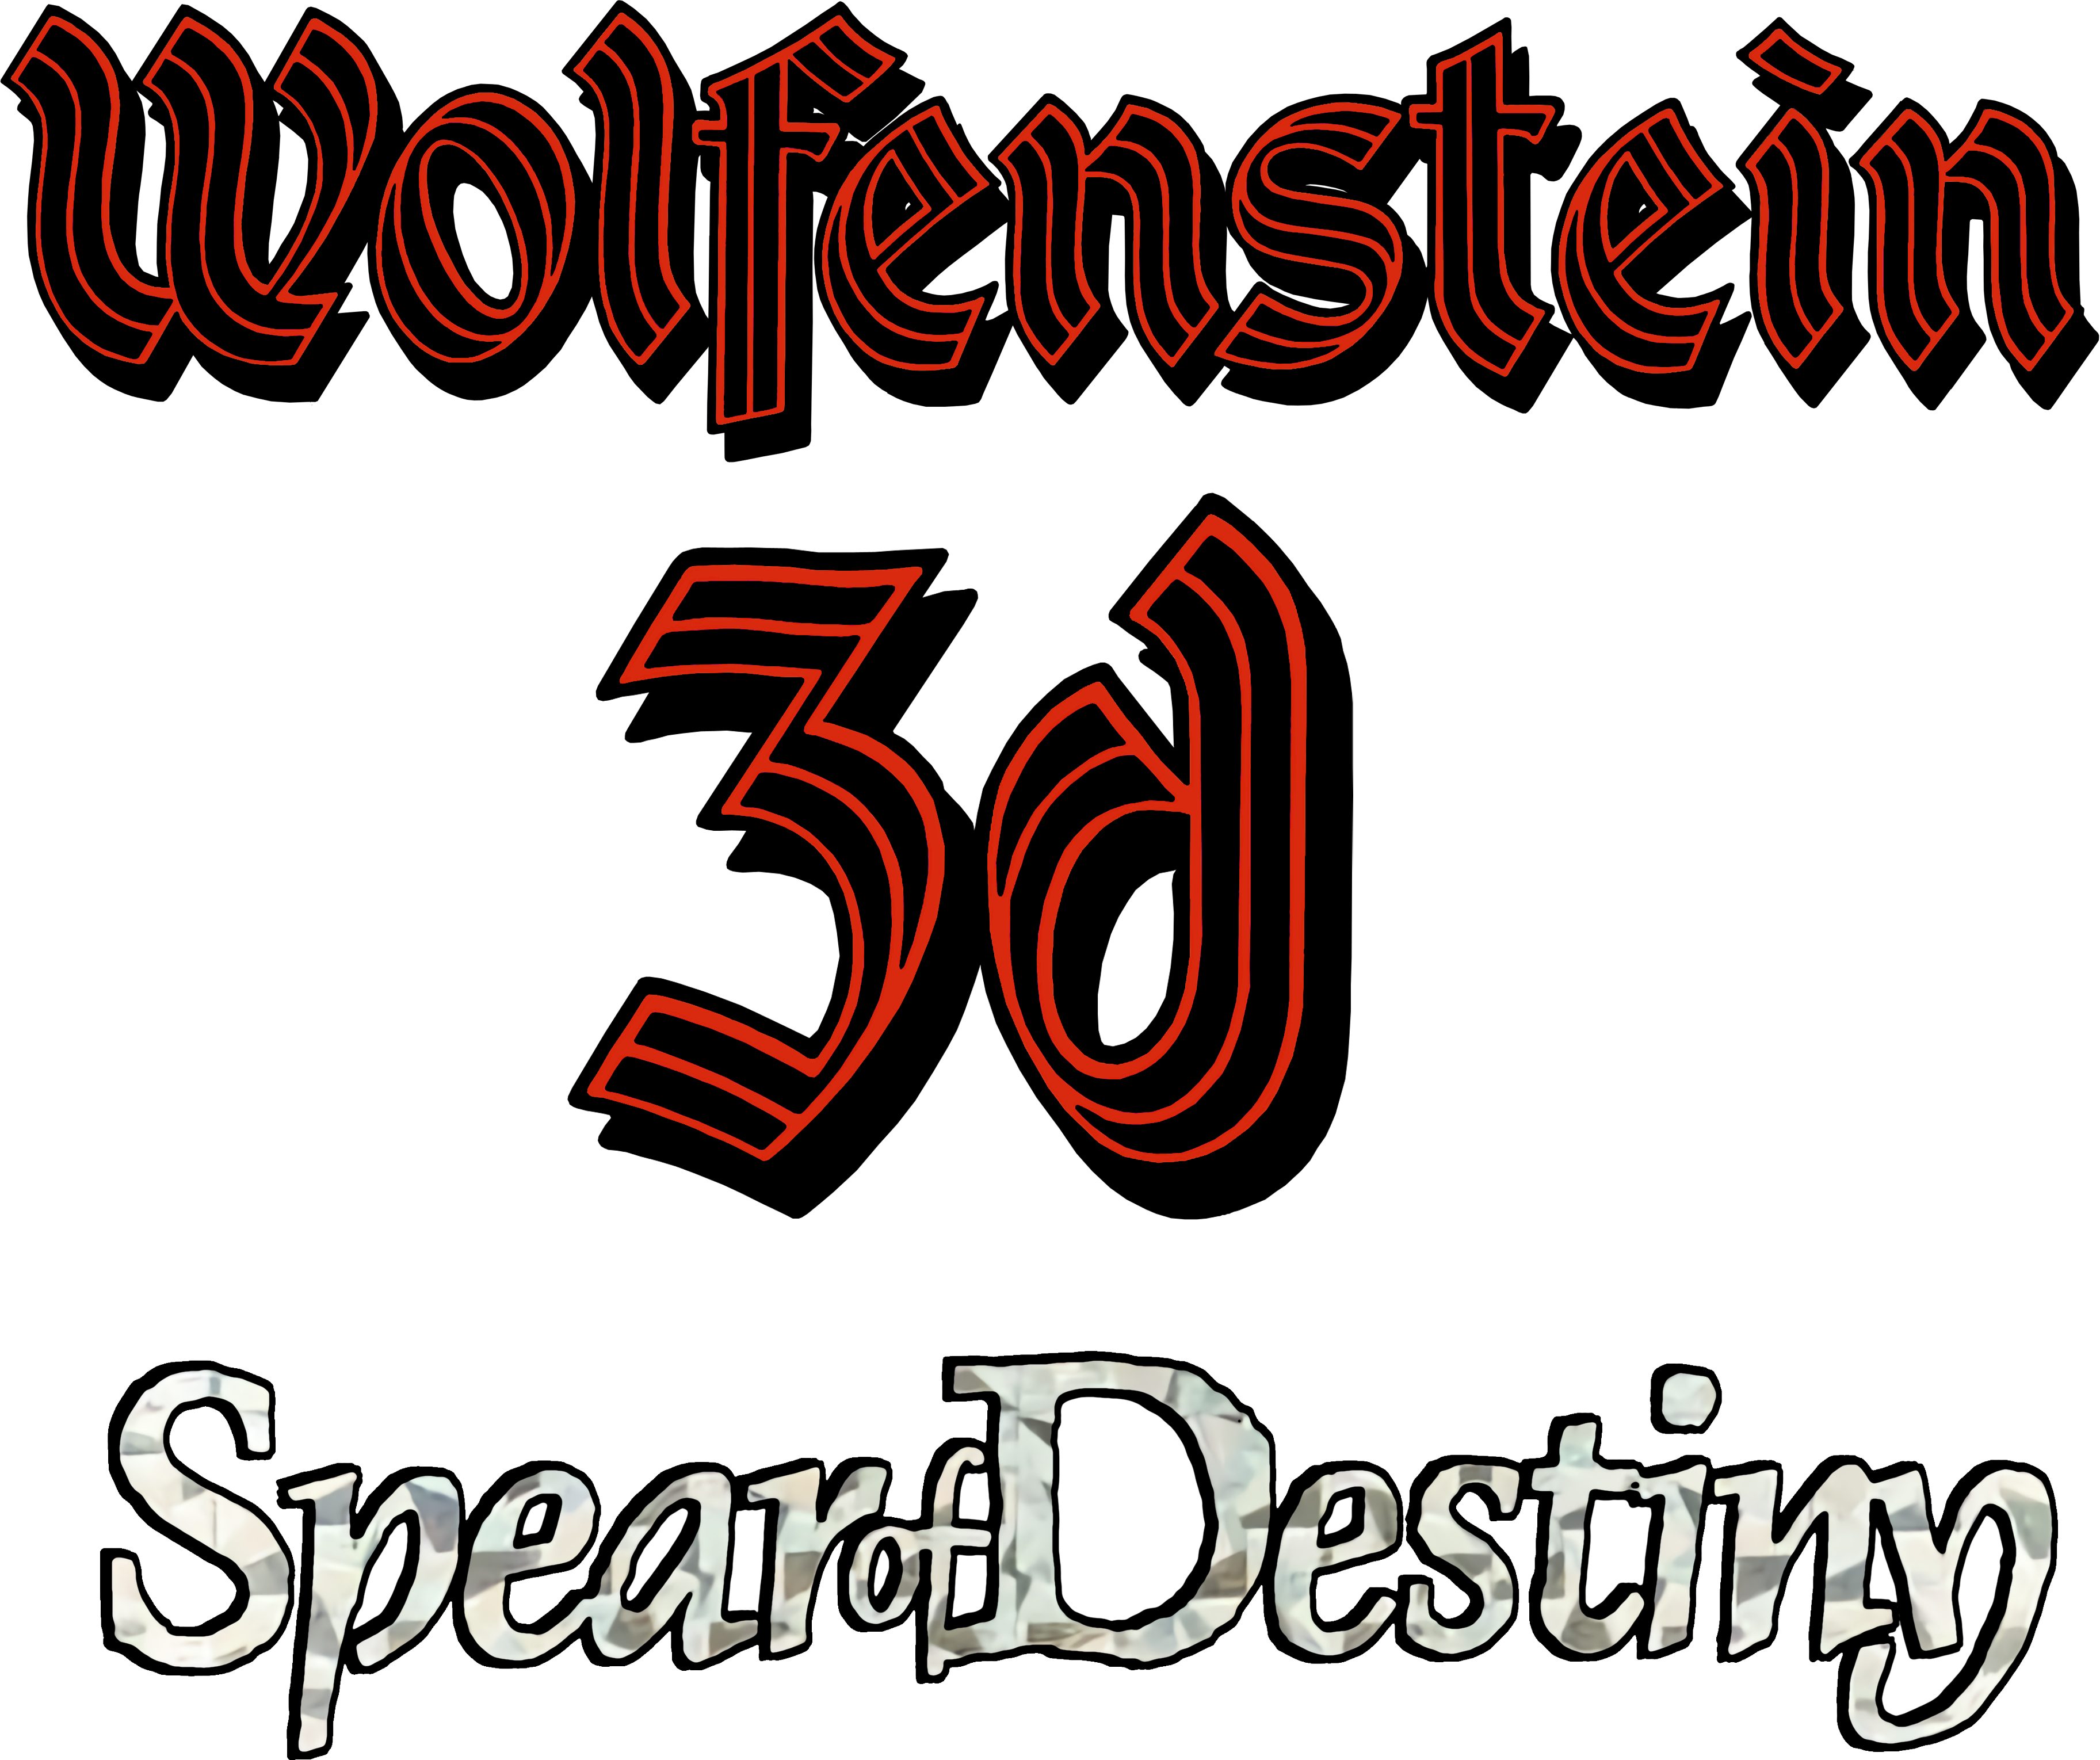 wolfenstein 3d logo